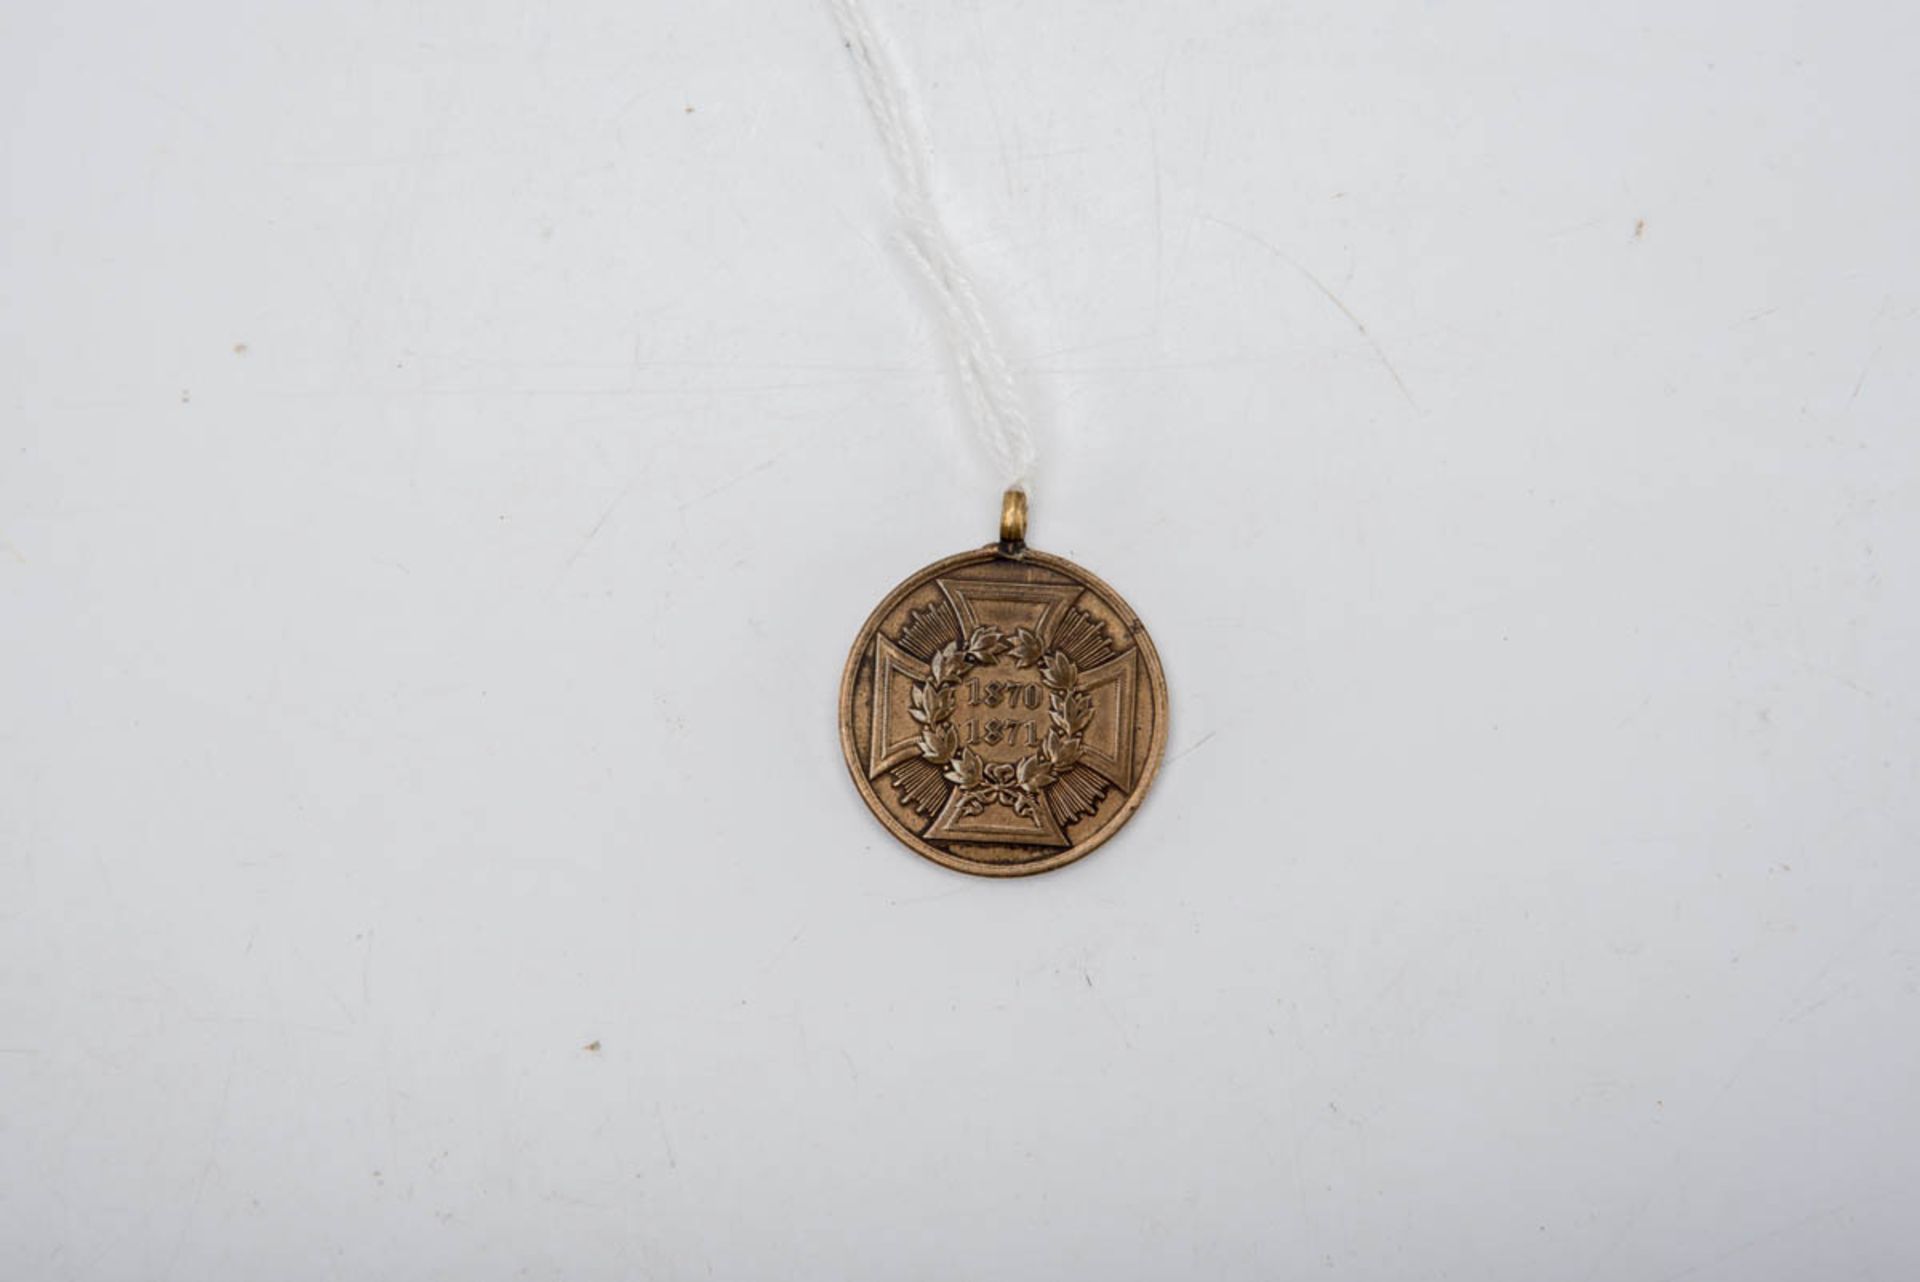 Bronzemedaille Preußen Bronzemedaille Preußen, Größe: 2,9 cm. Dem siegreichen Heere 1870/71, mit